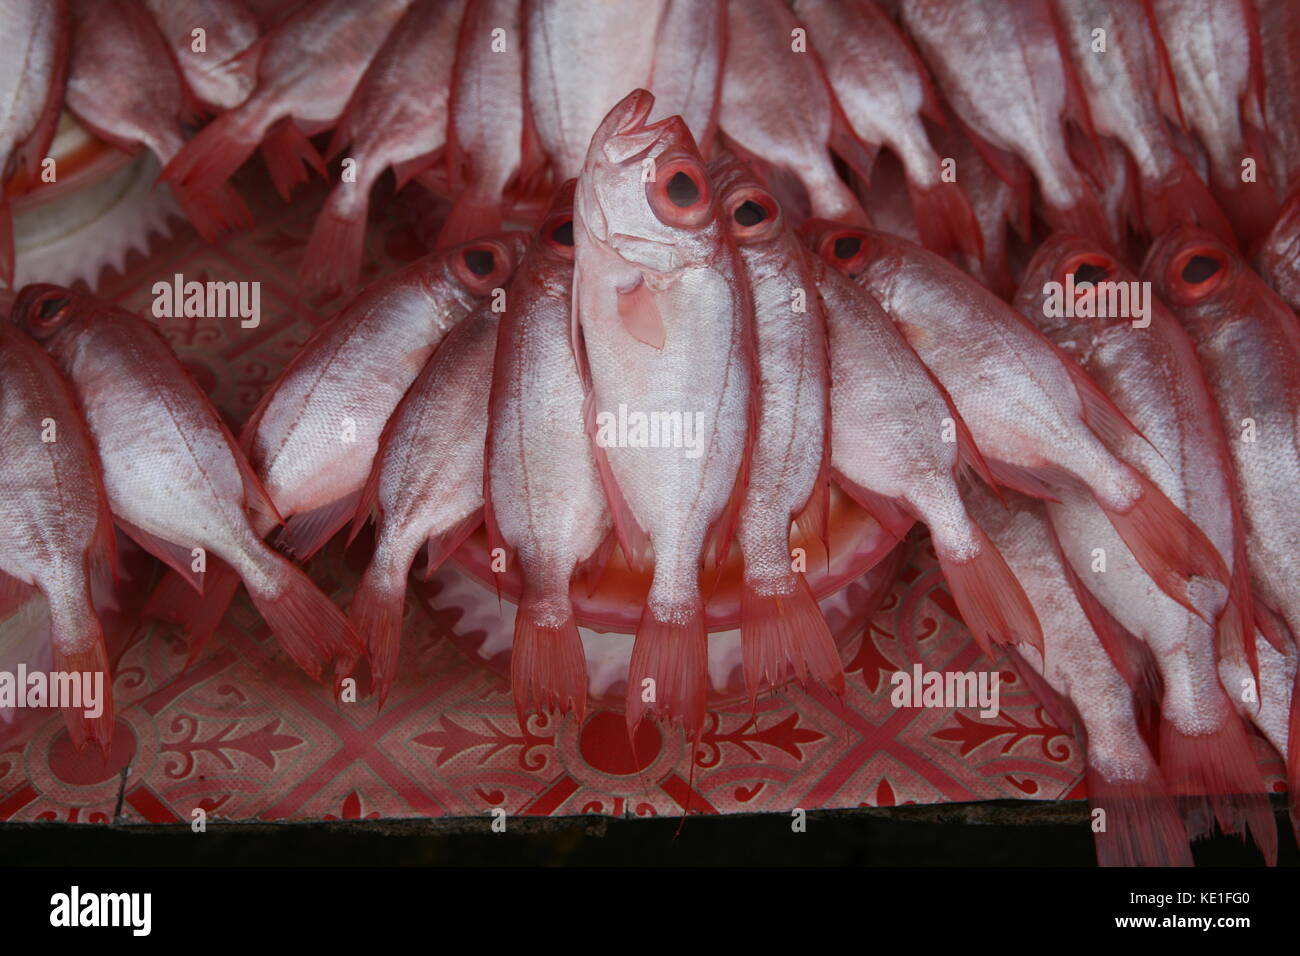 rote Fische zum Verkauf auf einem asiatischen Markt in Borneo - pesce rosso in vendita su un mercato asiatico Foto Stock